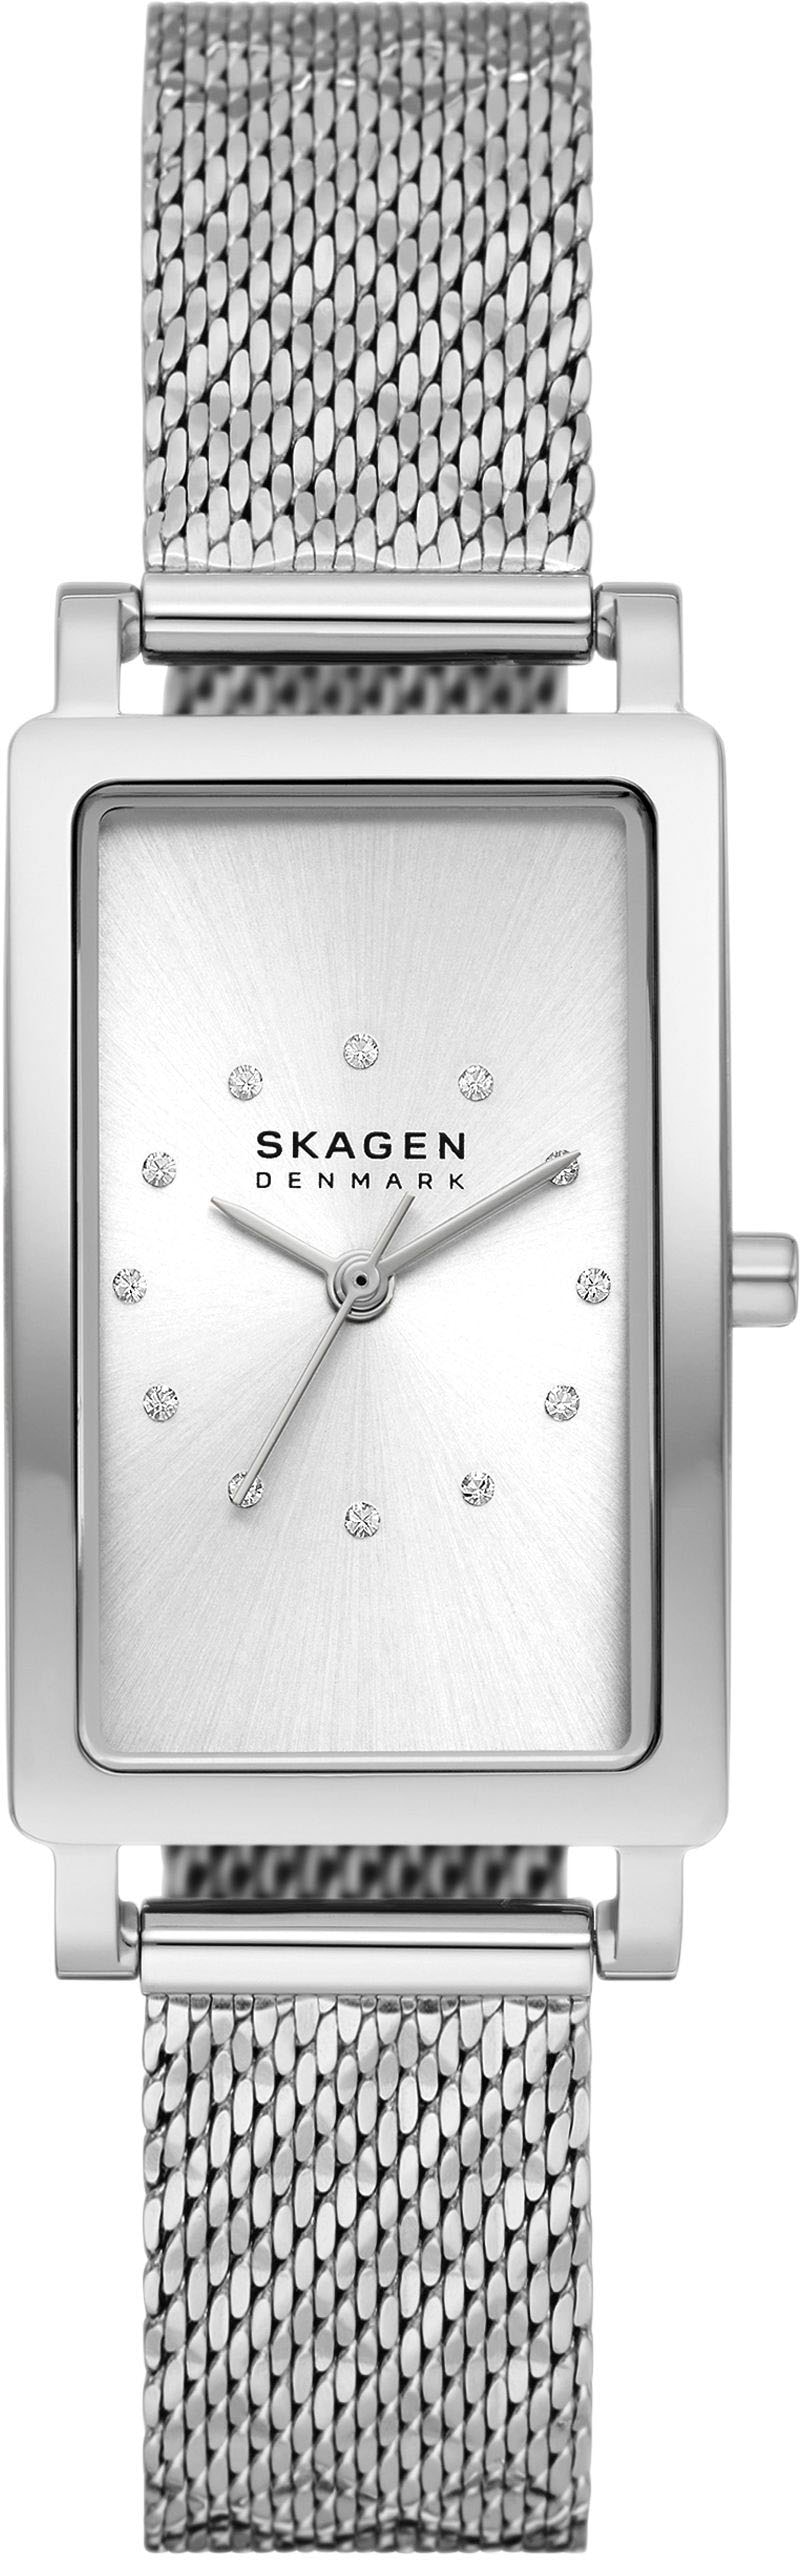 Skagen Quarzuhr »HAGEN, SKW3115«, Armbanduhr, Damenuhr, analog